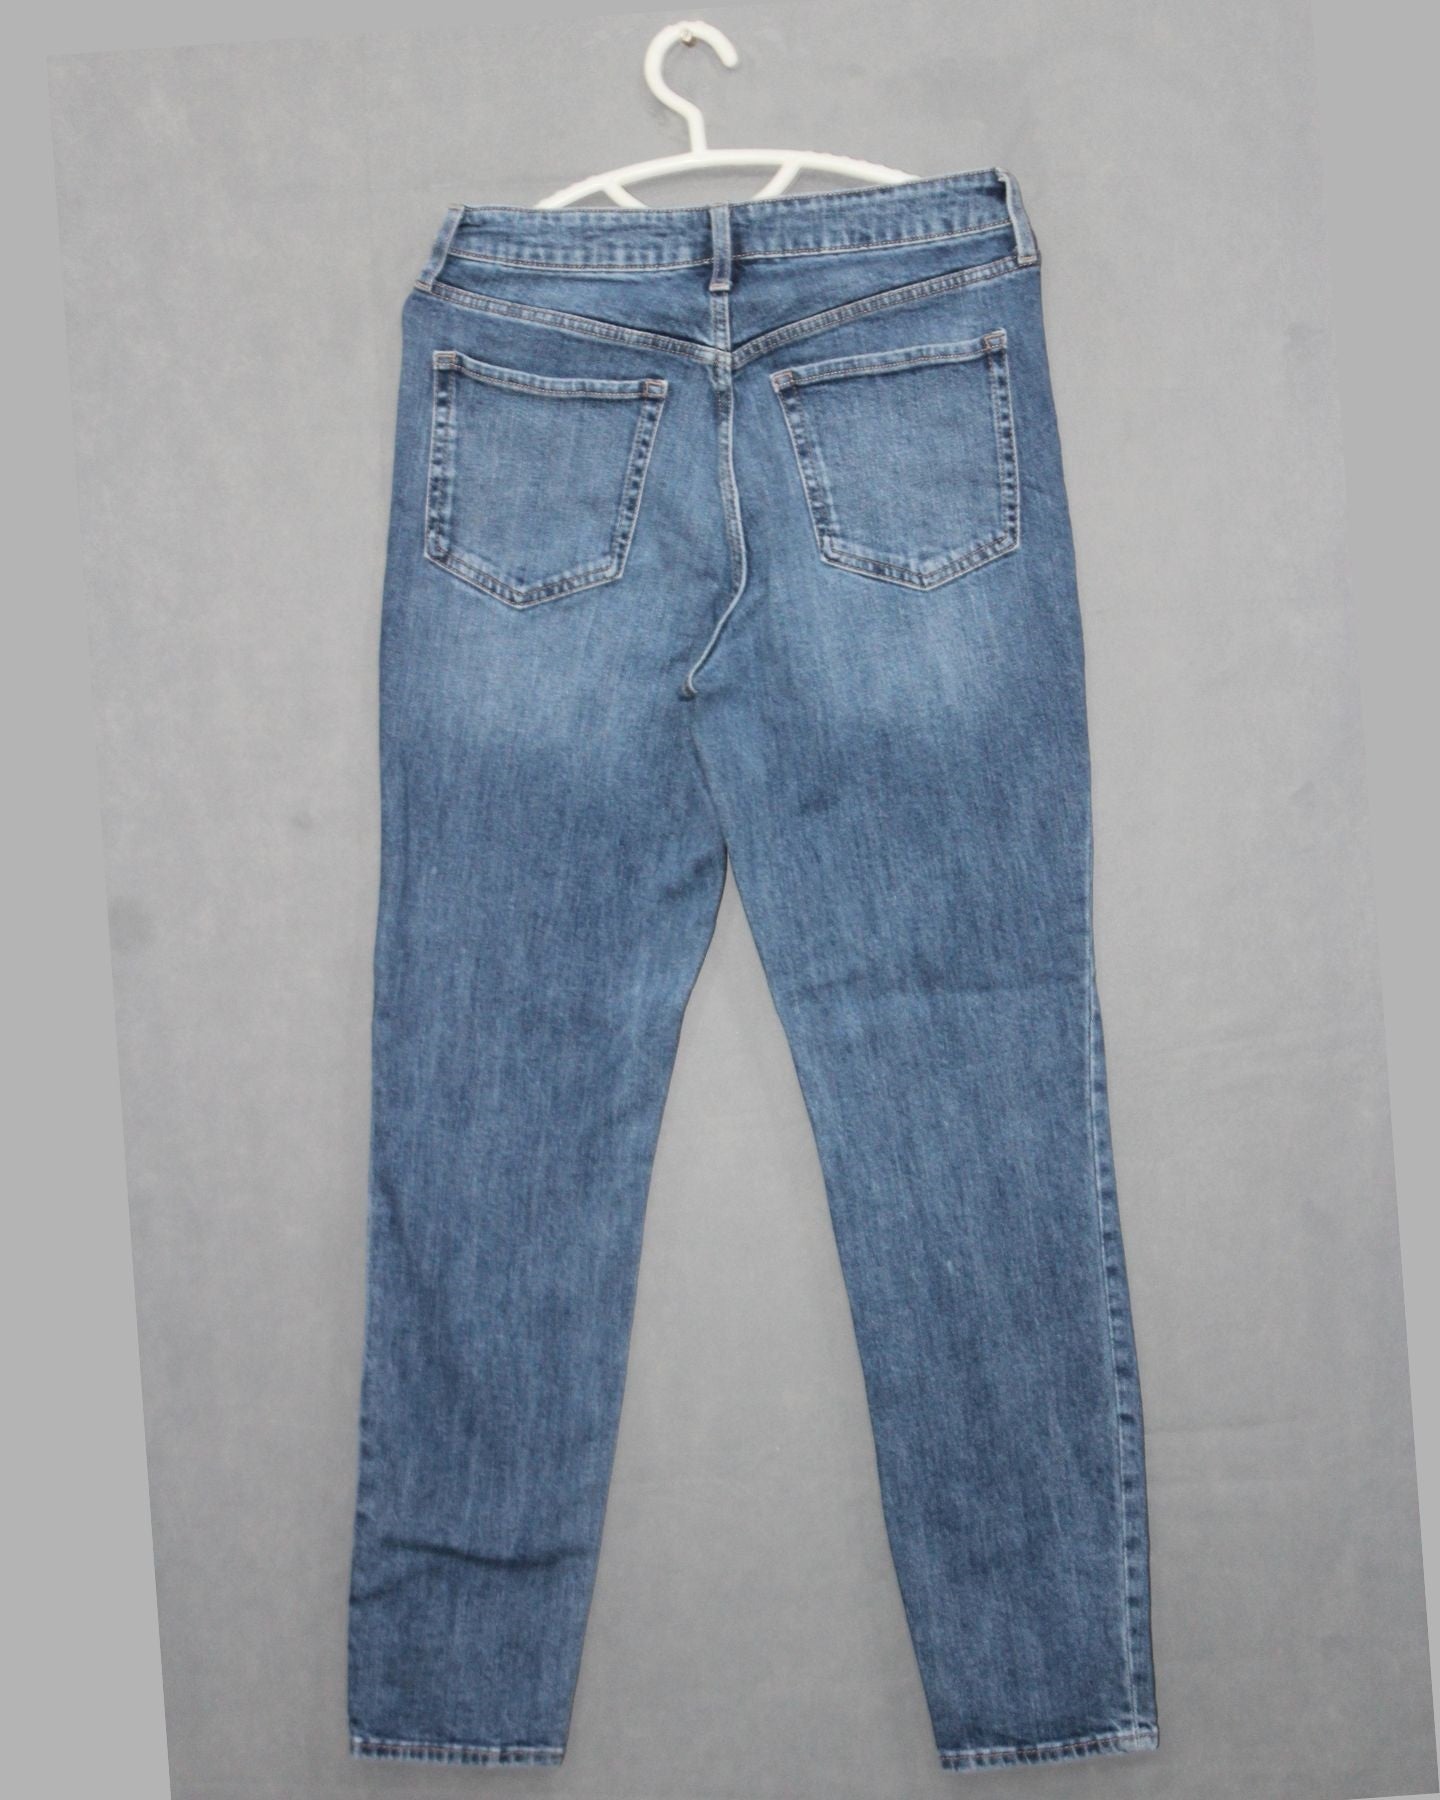 Old Navy Branded Original Denim Jeans For Men Pant